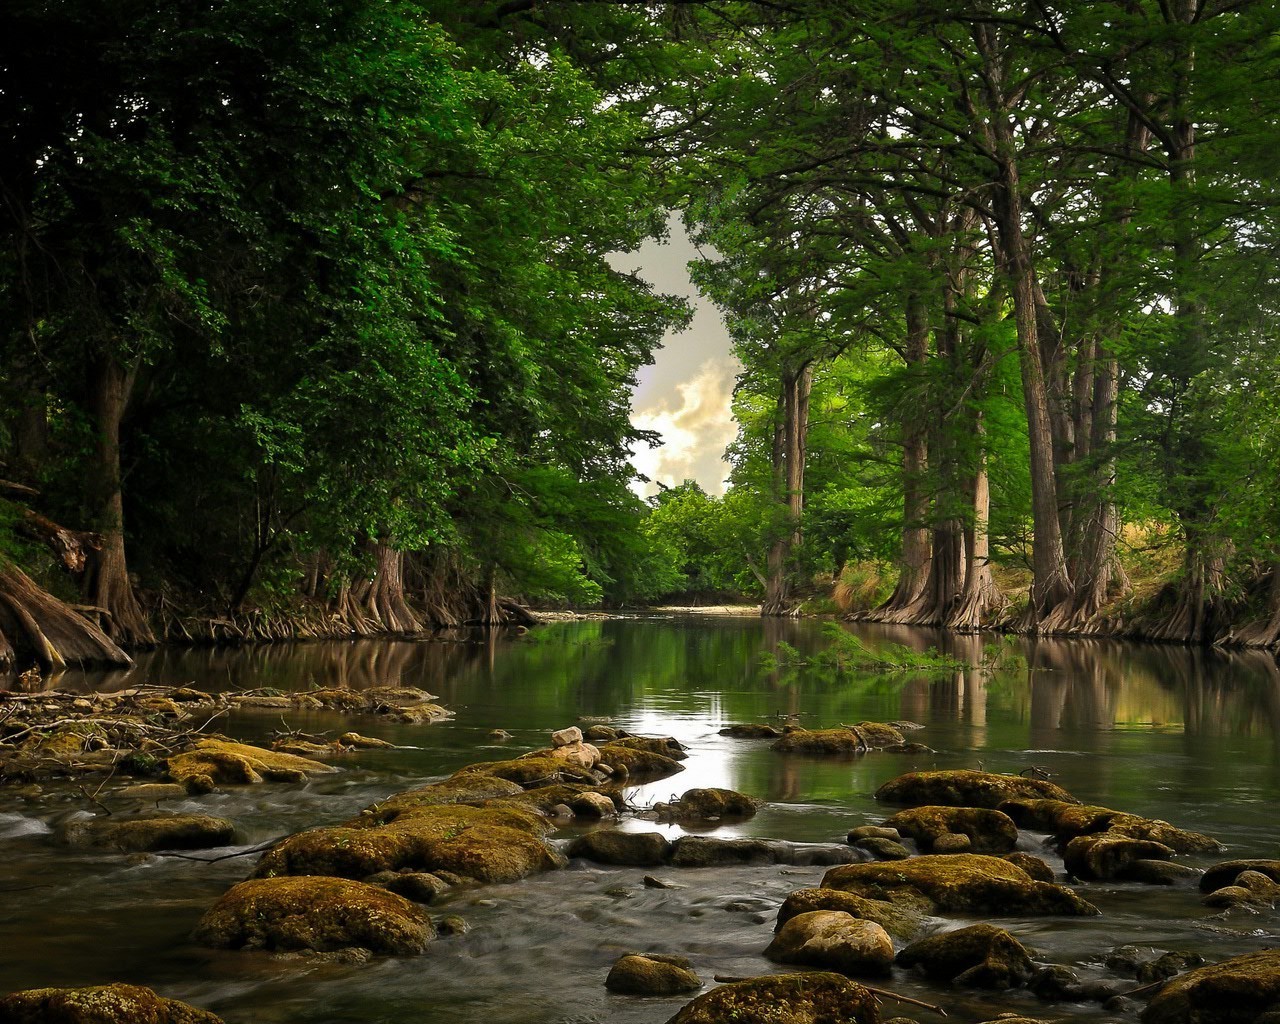 реки пруды и ручьи прудов и ручьев воды природа древесины река дерево лист осень пейзаж путешествия на открытом воздухе парк поток отражение озеро лето